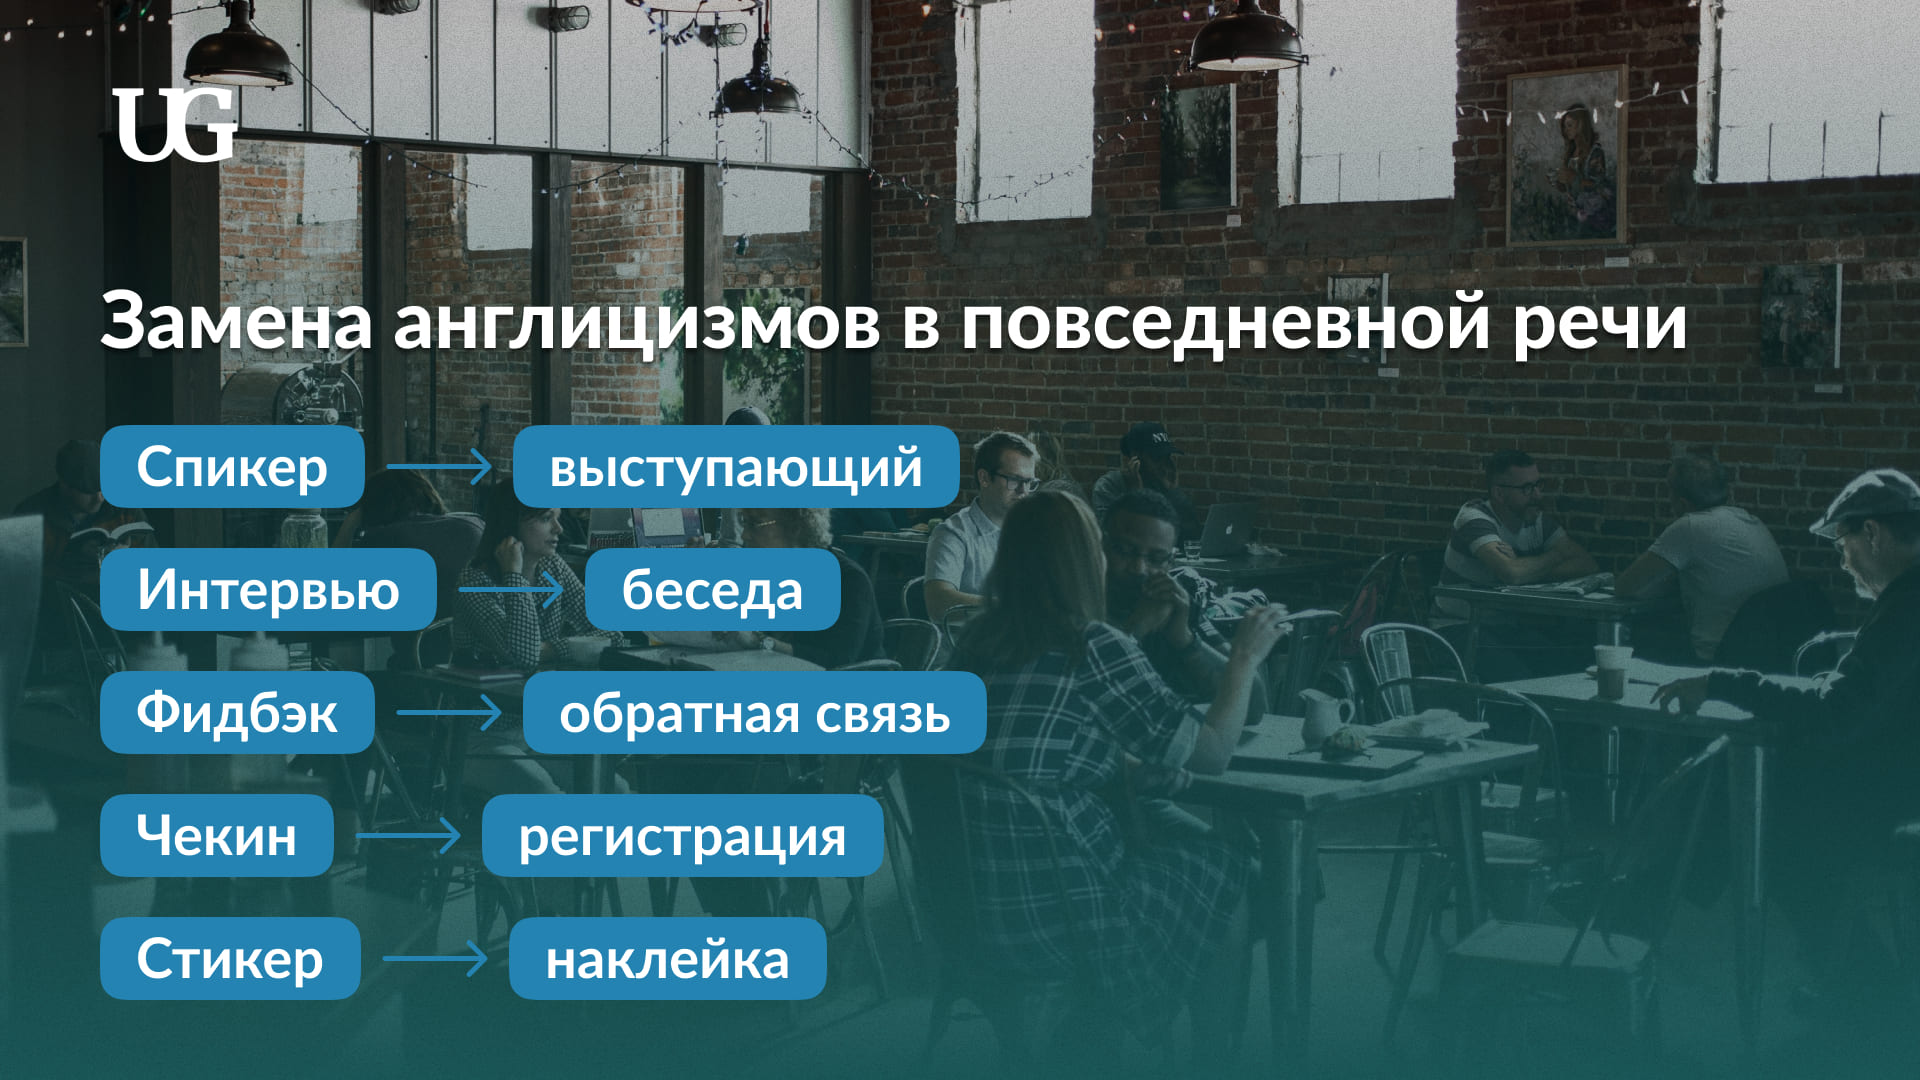 Новые слова в русском языке: примеры и значения слов